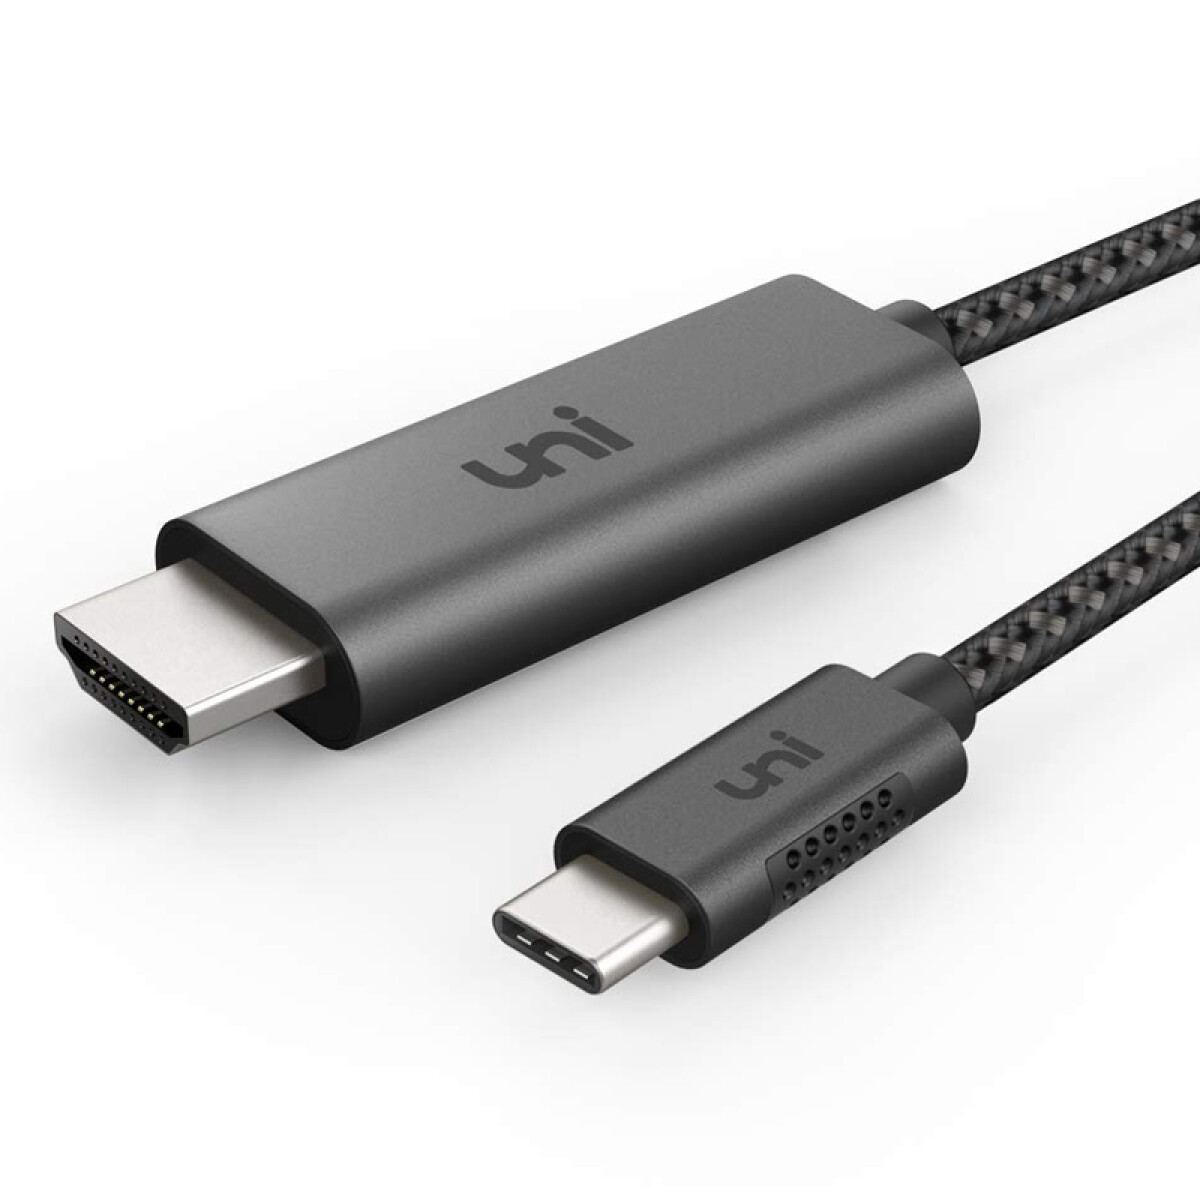 CABLE ADAPTADOR HDMI / USB-C 3.0 A LIGHTNING - Negro 